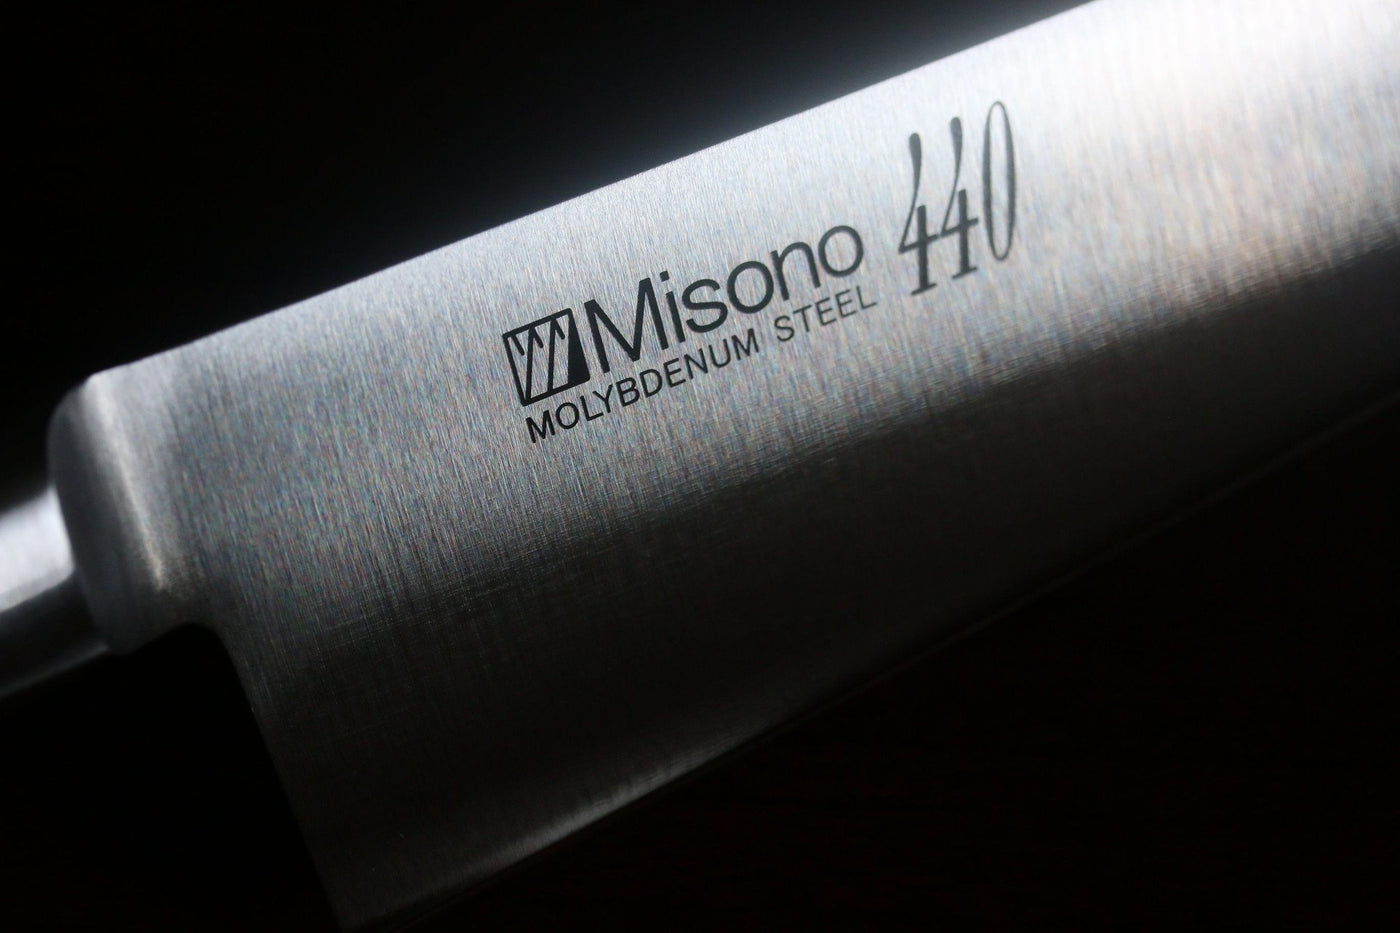 ミソノ 440 モリブデン鋼（MOL） 筋引包丁 和包丁 270mm – 清助刃物